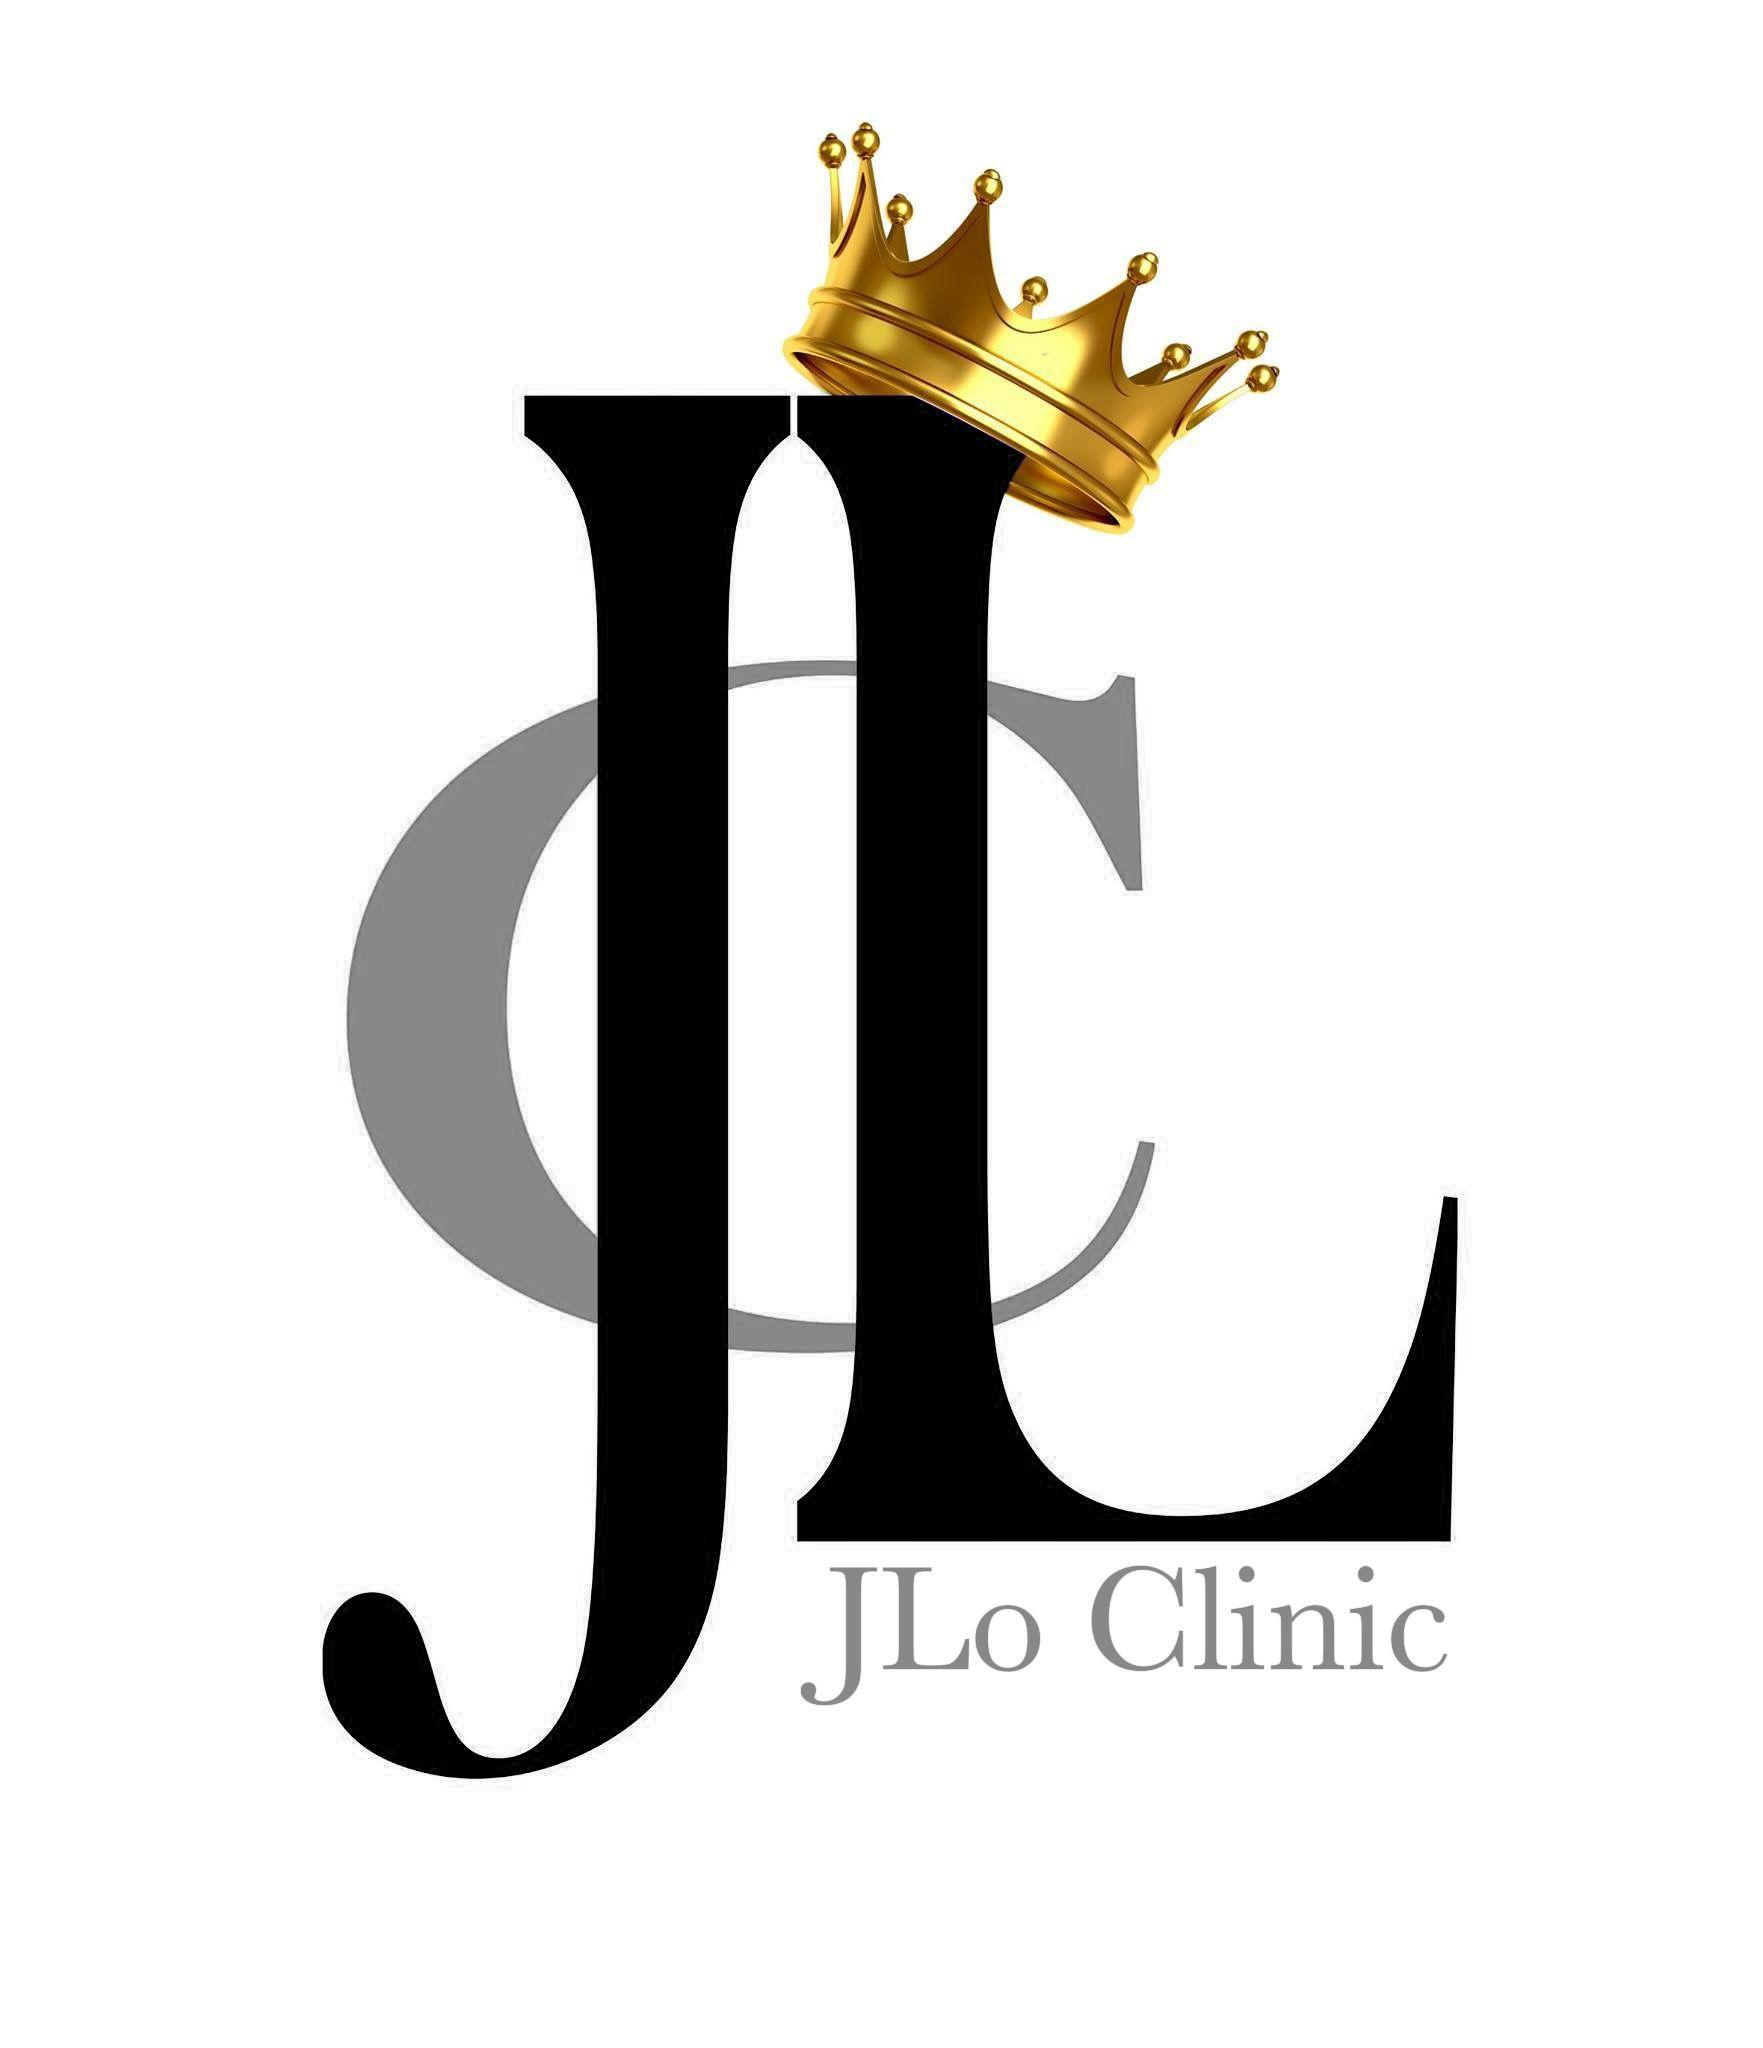 J.Lo Logo - JLo Clinic